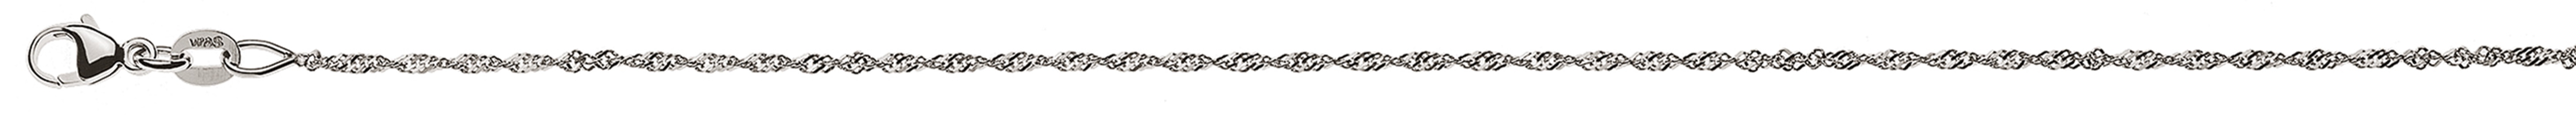 AURONOS Style Halskette Weissgold 9K Singapurkette 45cm 1.2mm